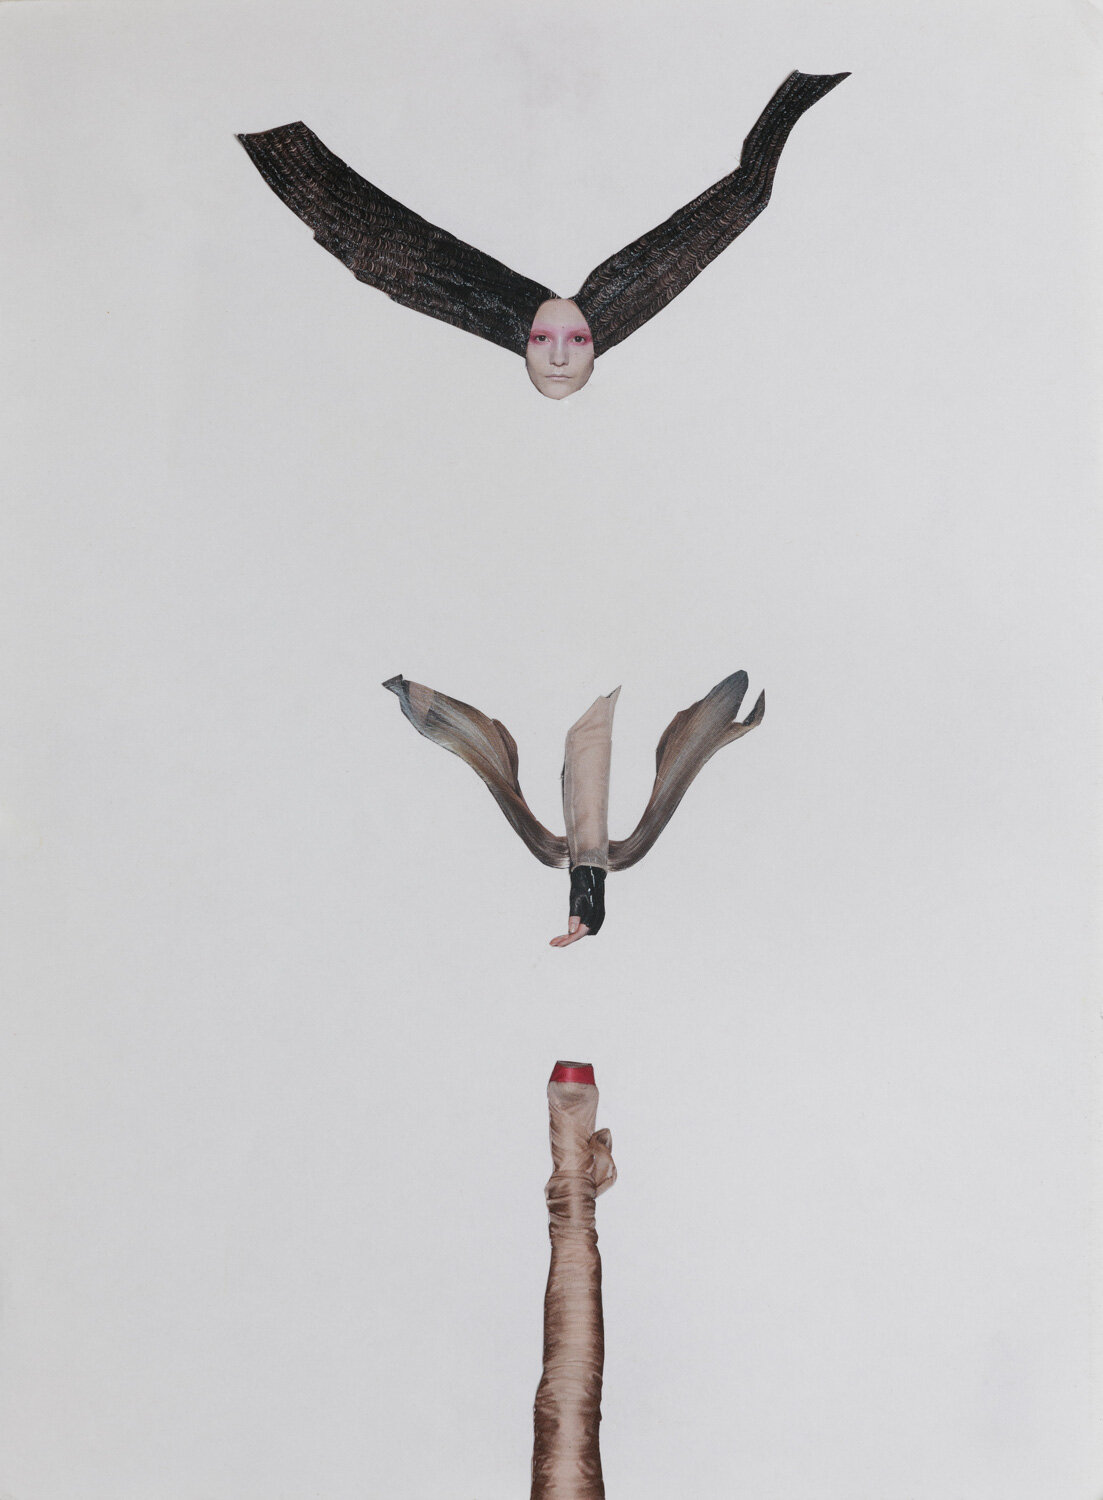 רחל פרומקין, התפרקות, קולאז' על נייר, 2009 | קרדיט צילום: טל נסים